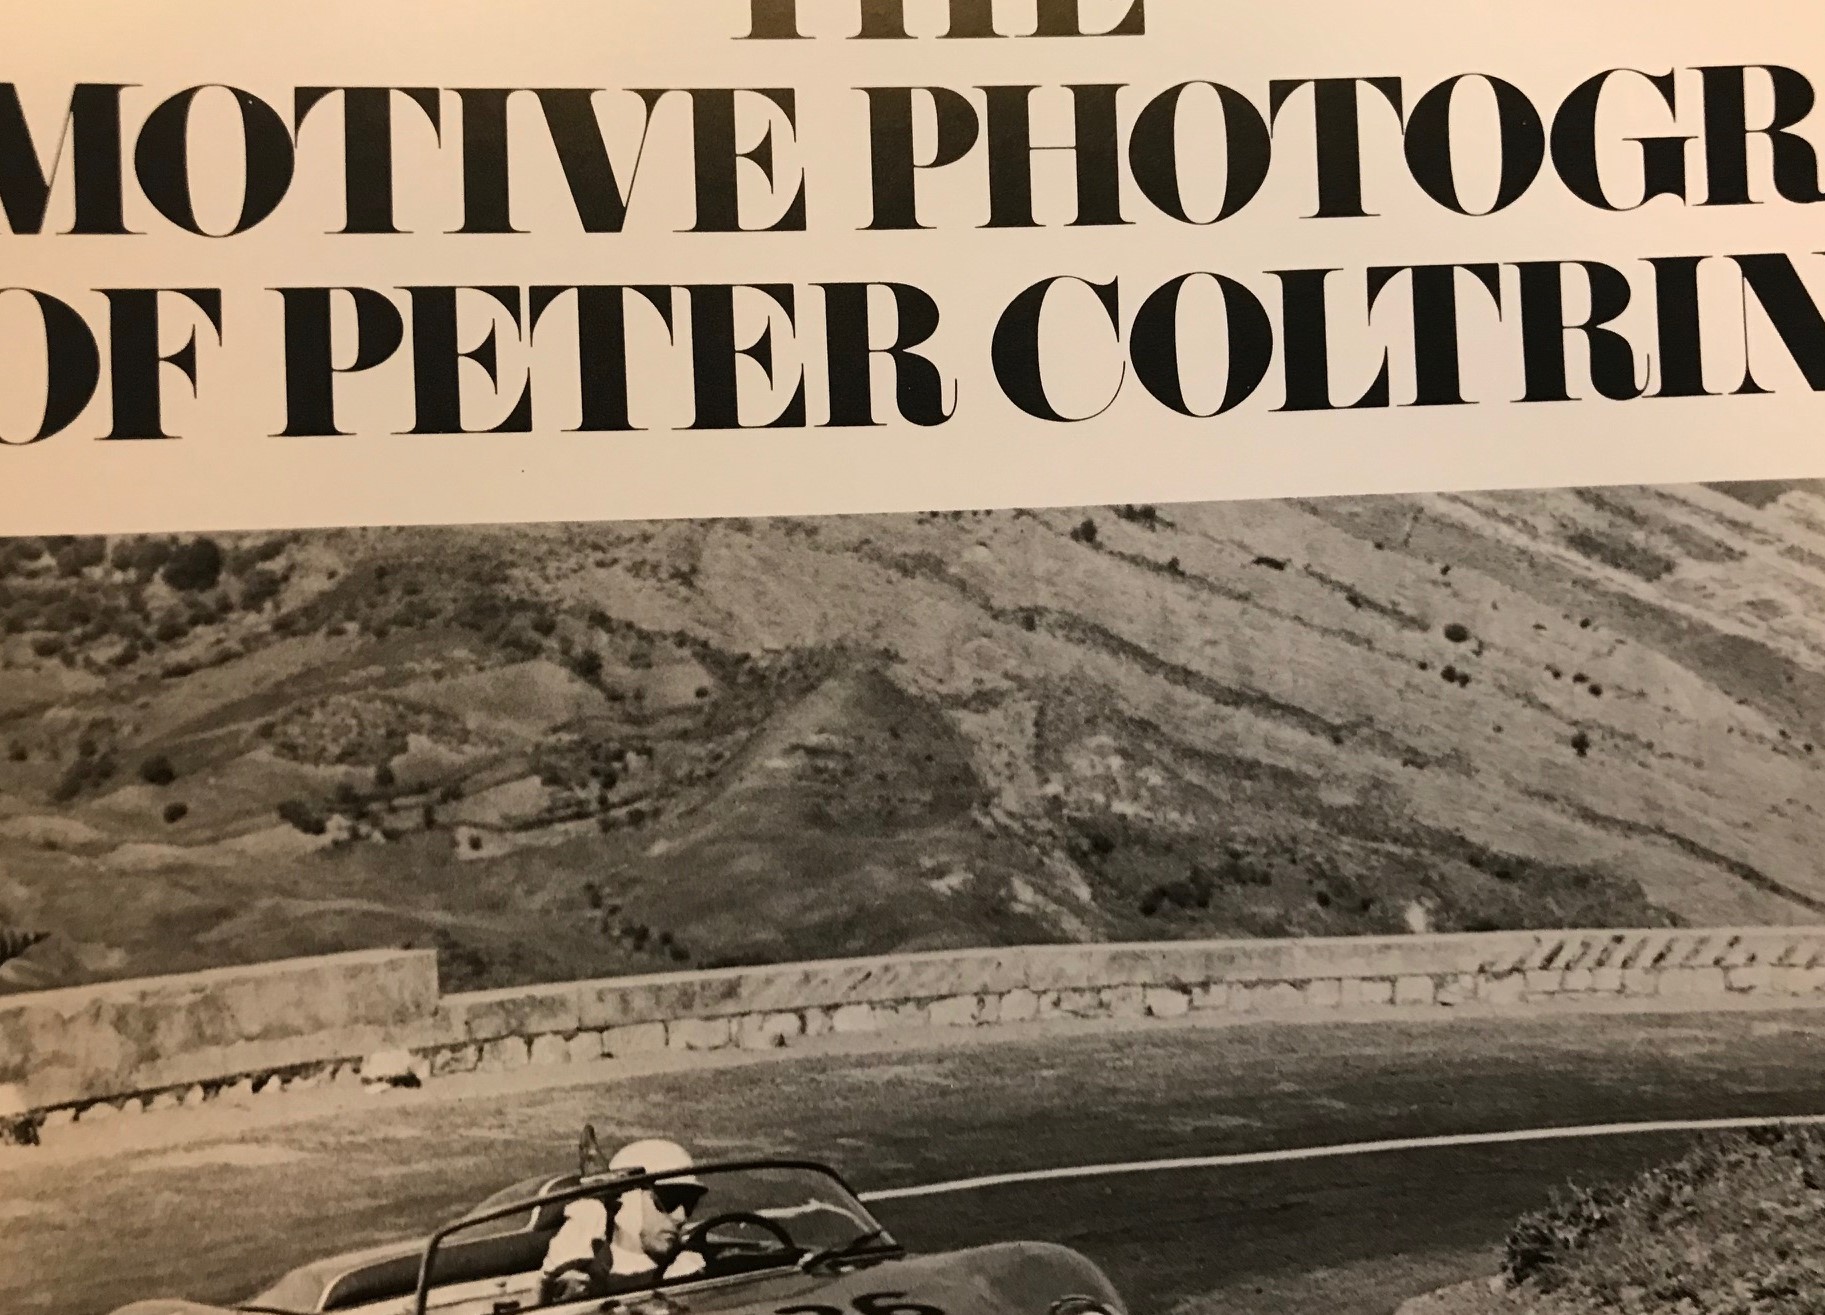 Photography of Peter Coltrin - fin fotobok i svartvitt från '78, ca 100 sid, format 24x30cm